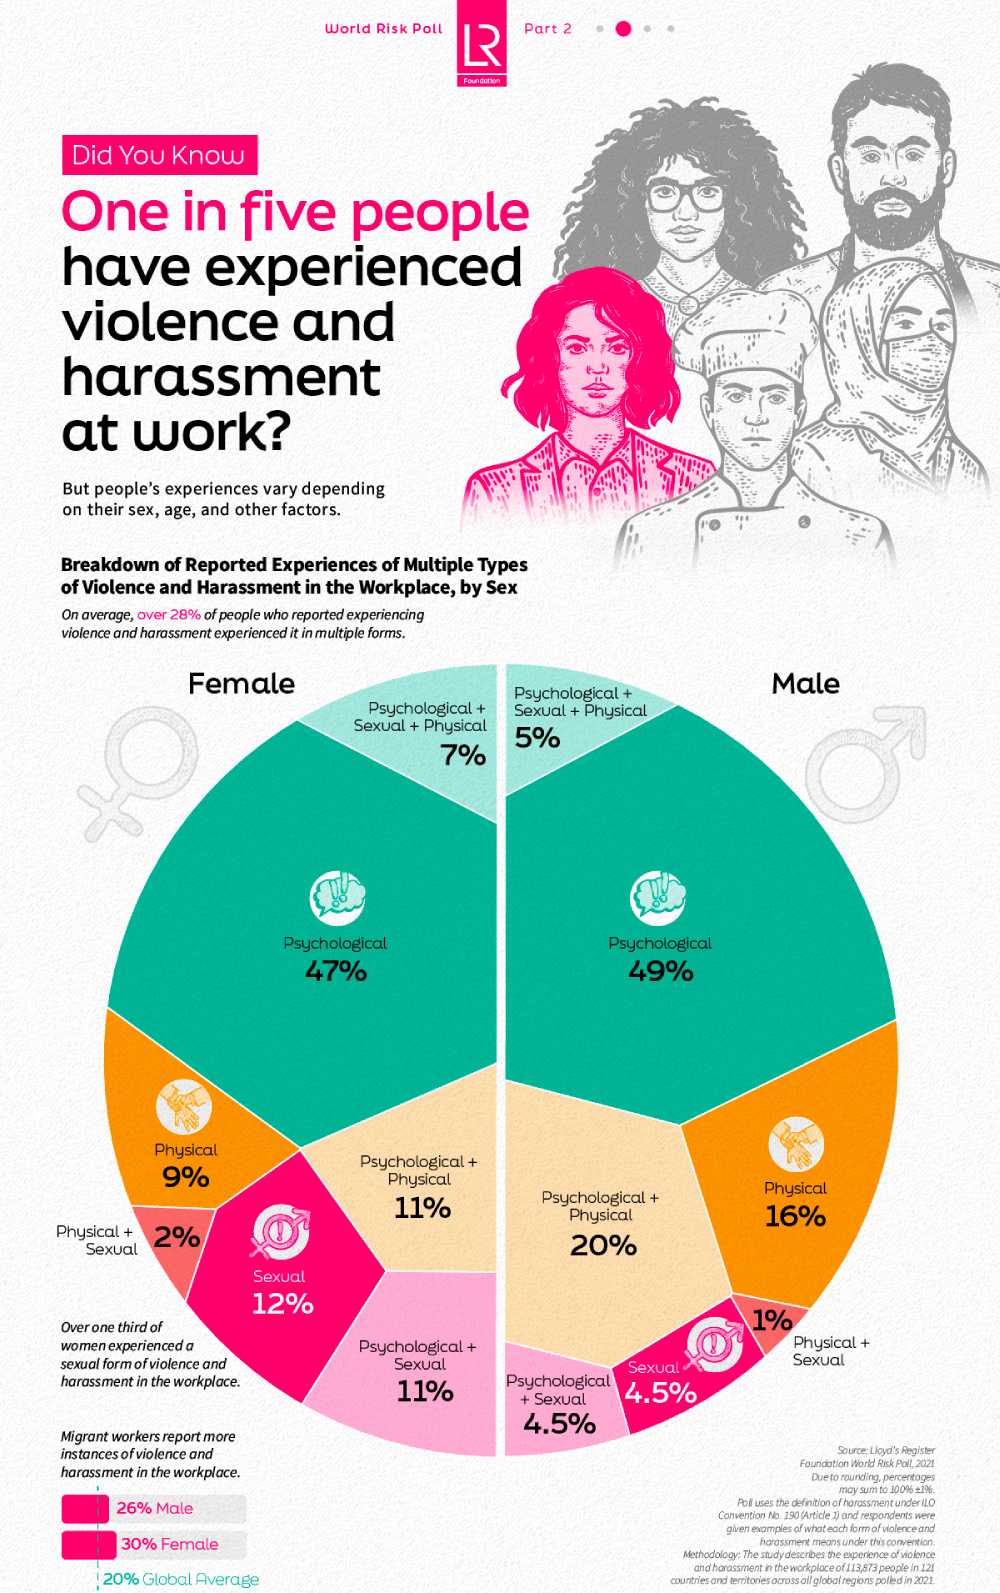 بررسی میزان آزار و اذیت و خشونت در محل کار در مقیاس جهانی